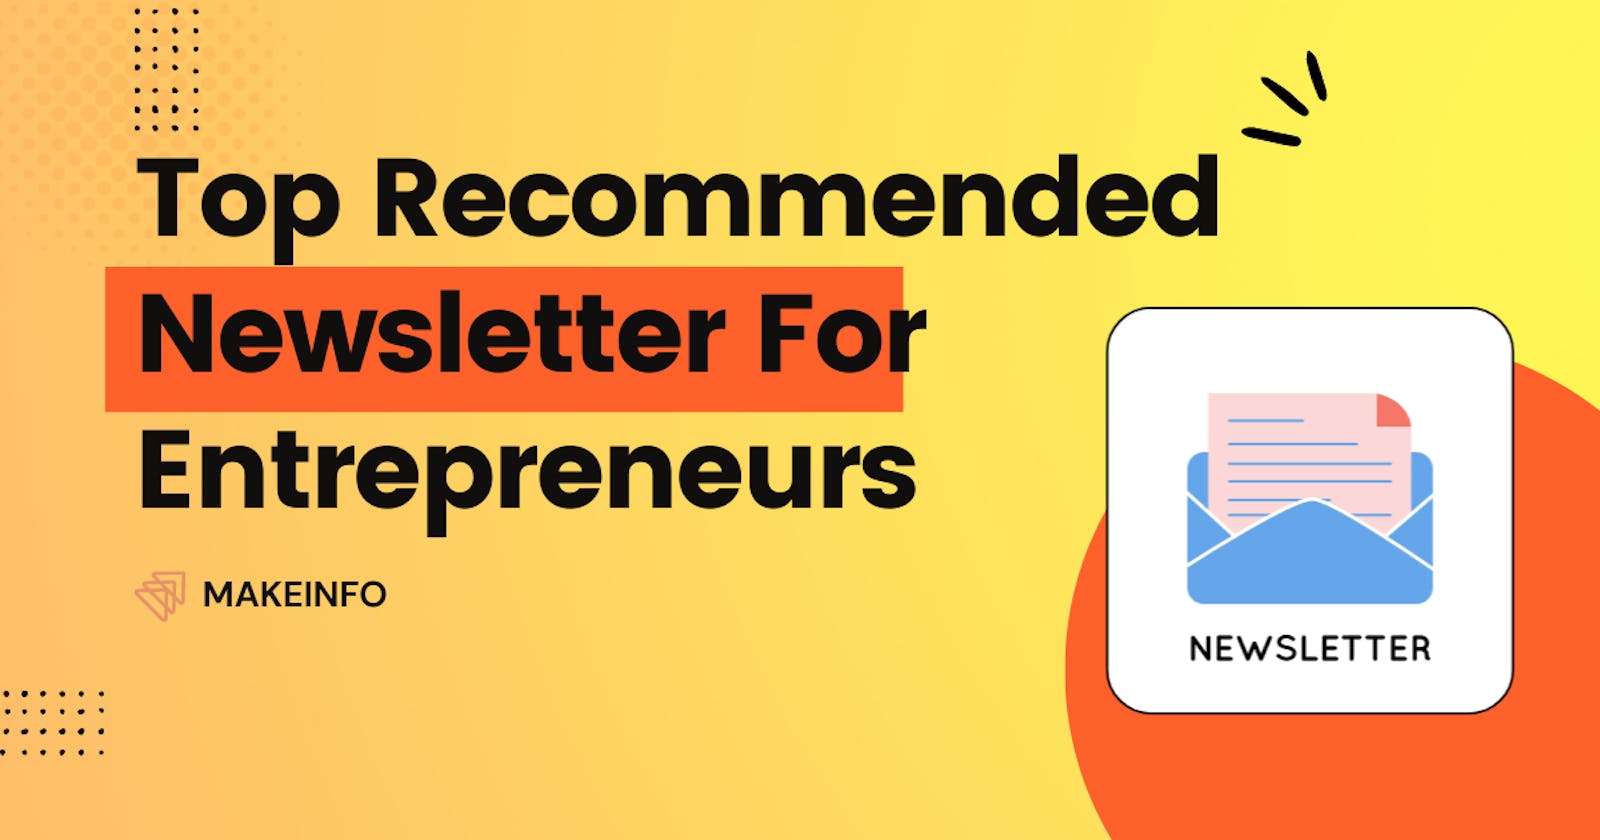 Top Recommended Newsletter for Entrepreneurs